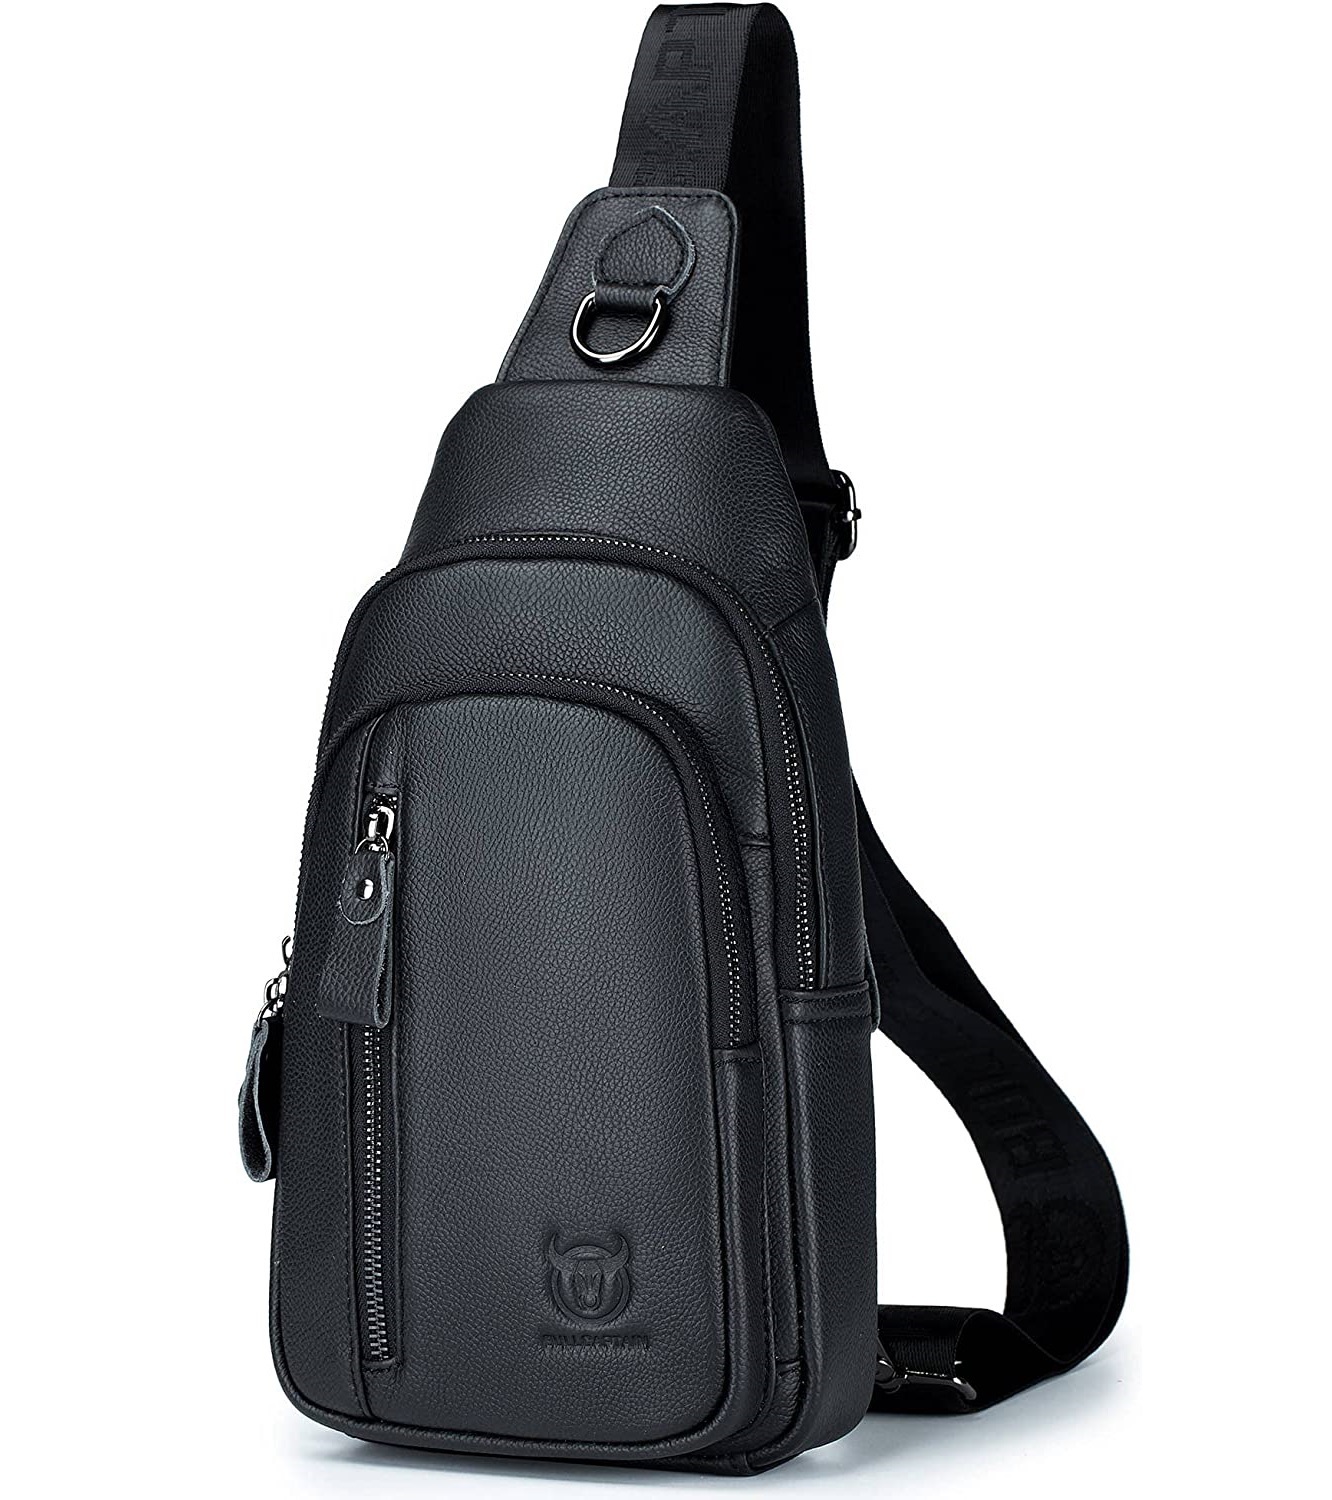 Modern black leather sling bag